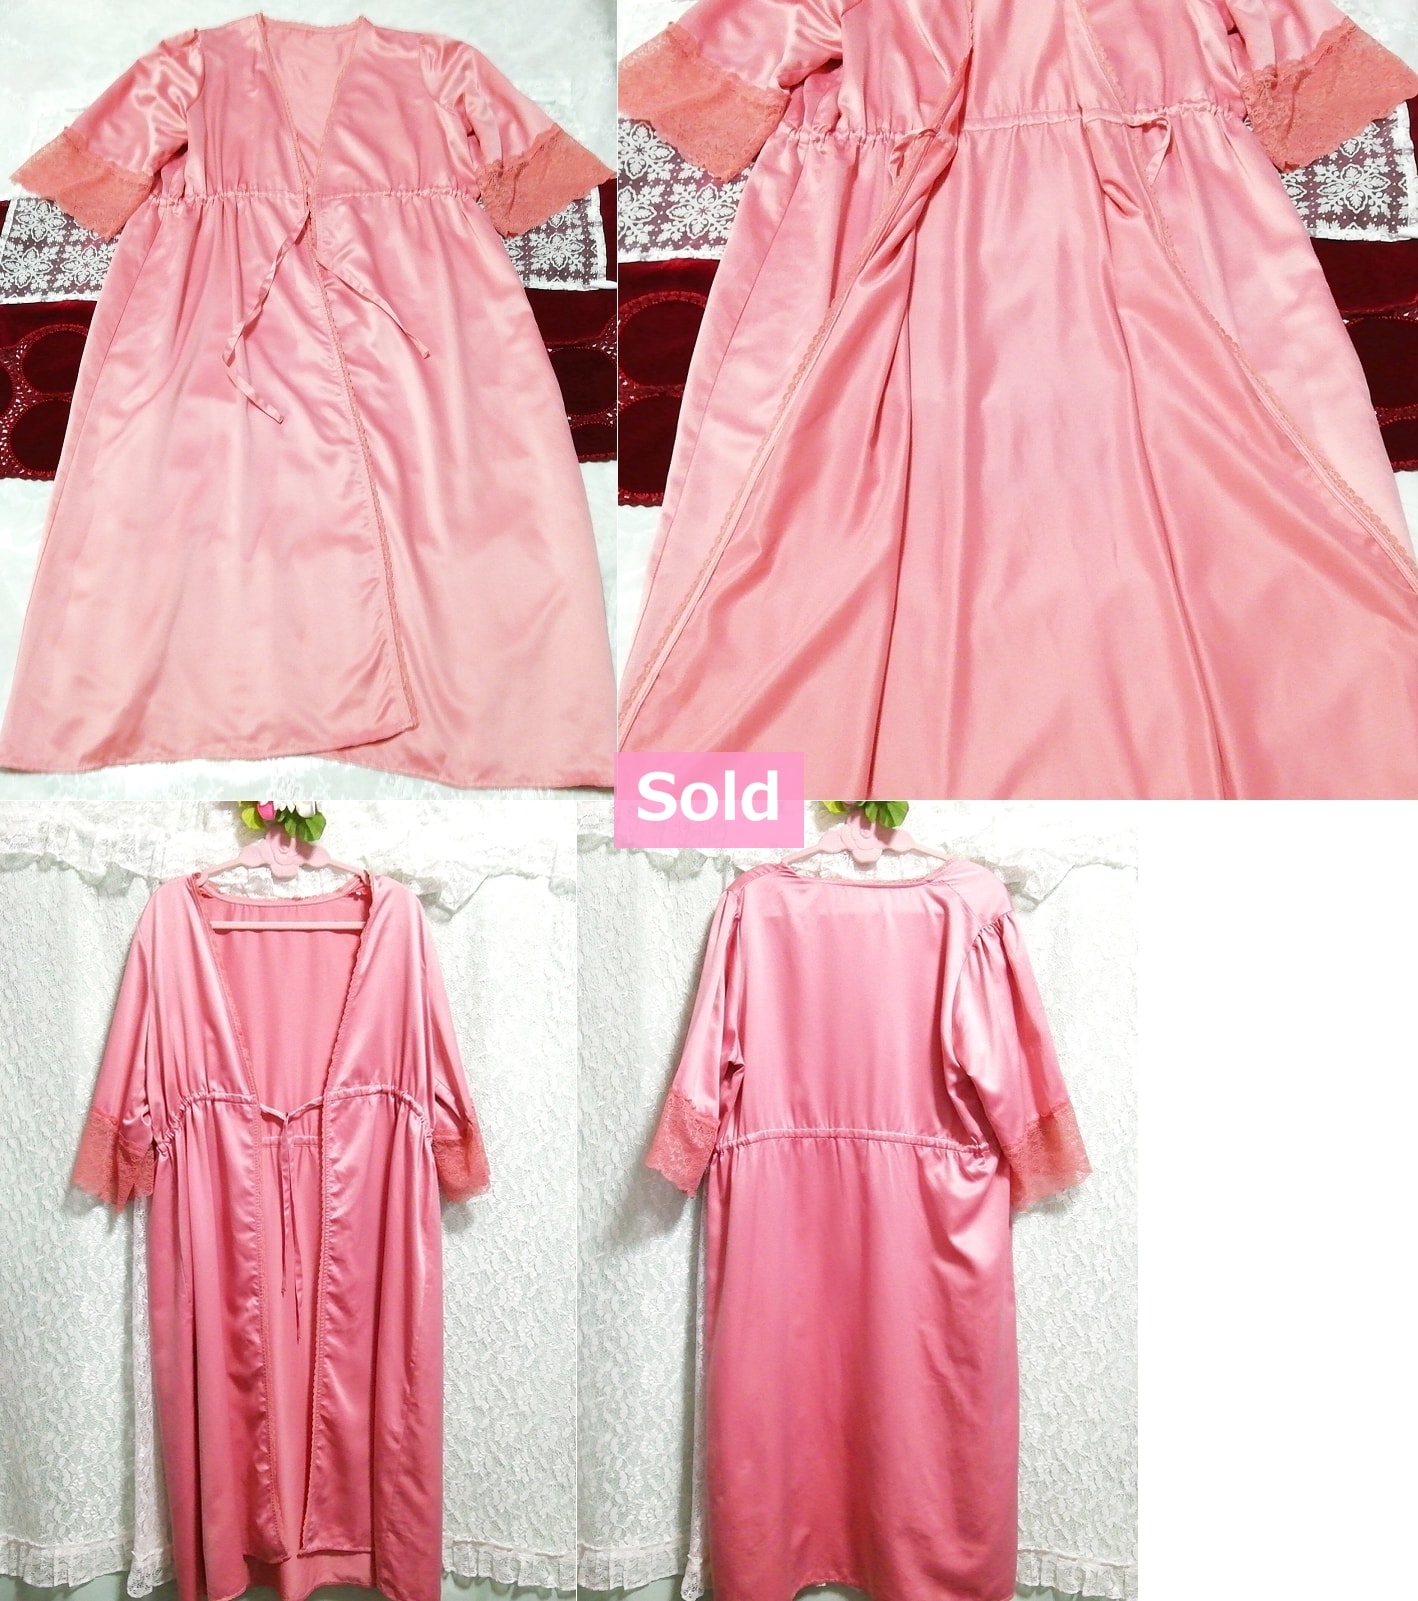 Camisón maxi de satén rosa ropa de dormir vestido haori vestido de una sola pieza, moda, moda para damas, ropa de dormir, pijama